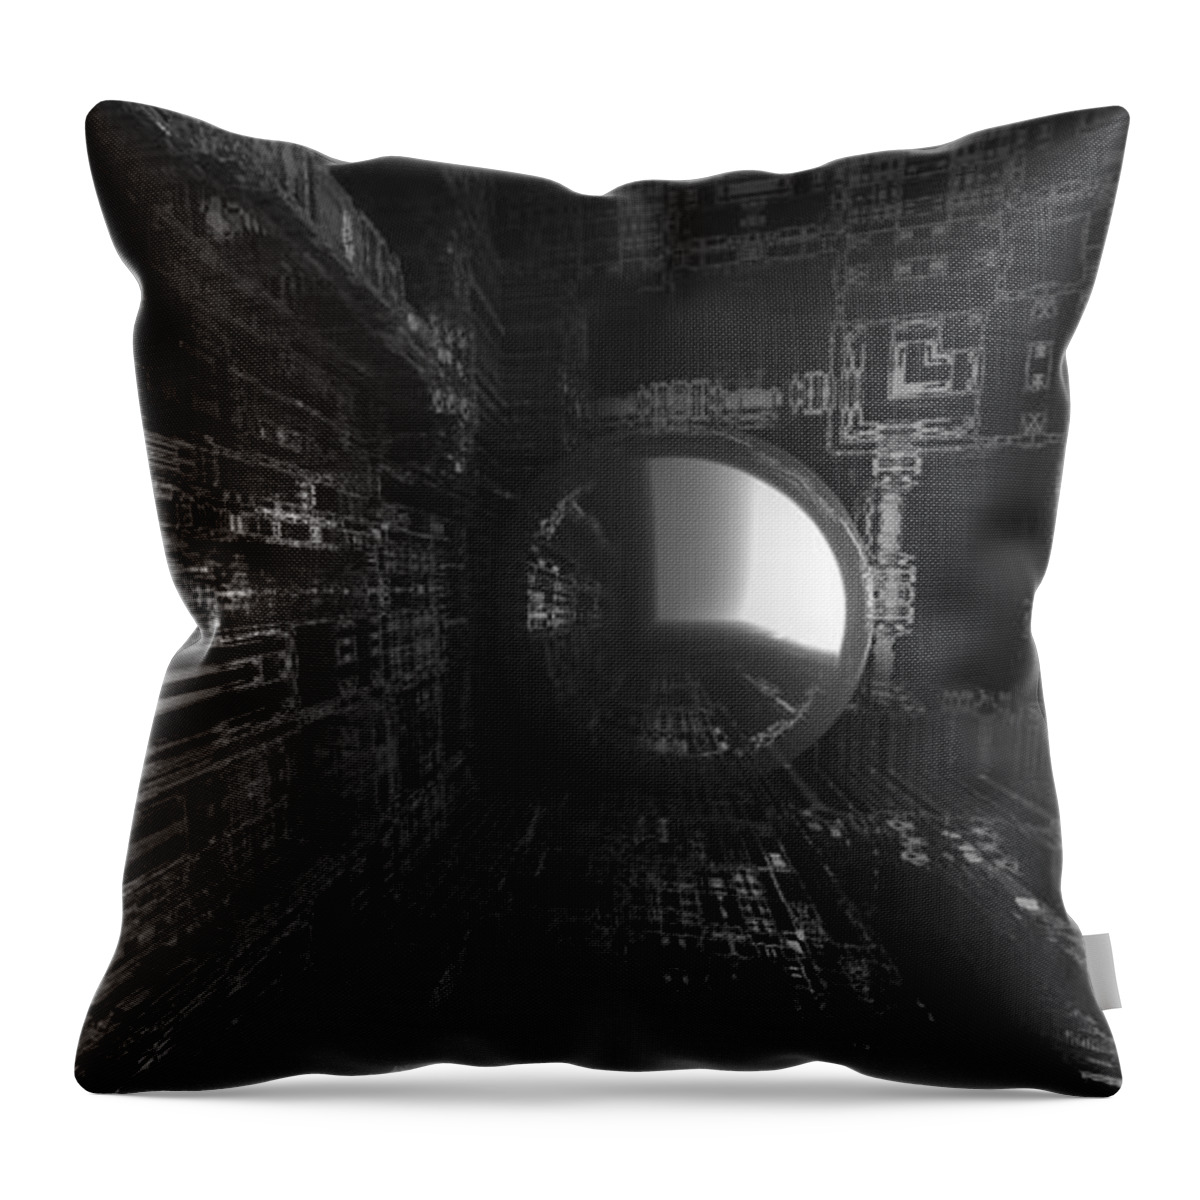 Fractal Throw Pillow featuring the digital art The Light Awaits by Jon Munson II